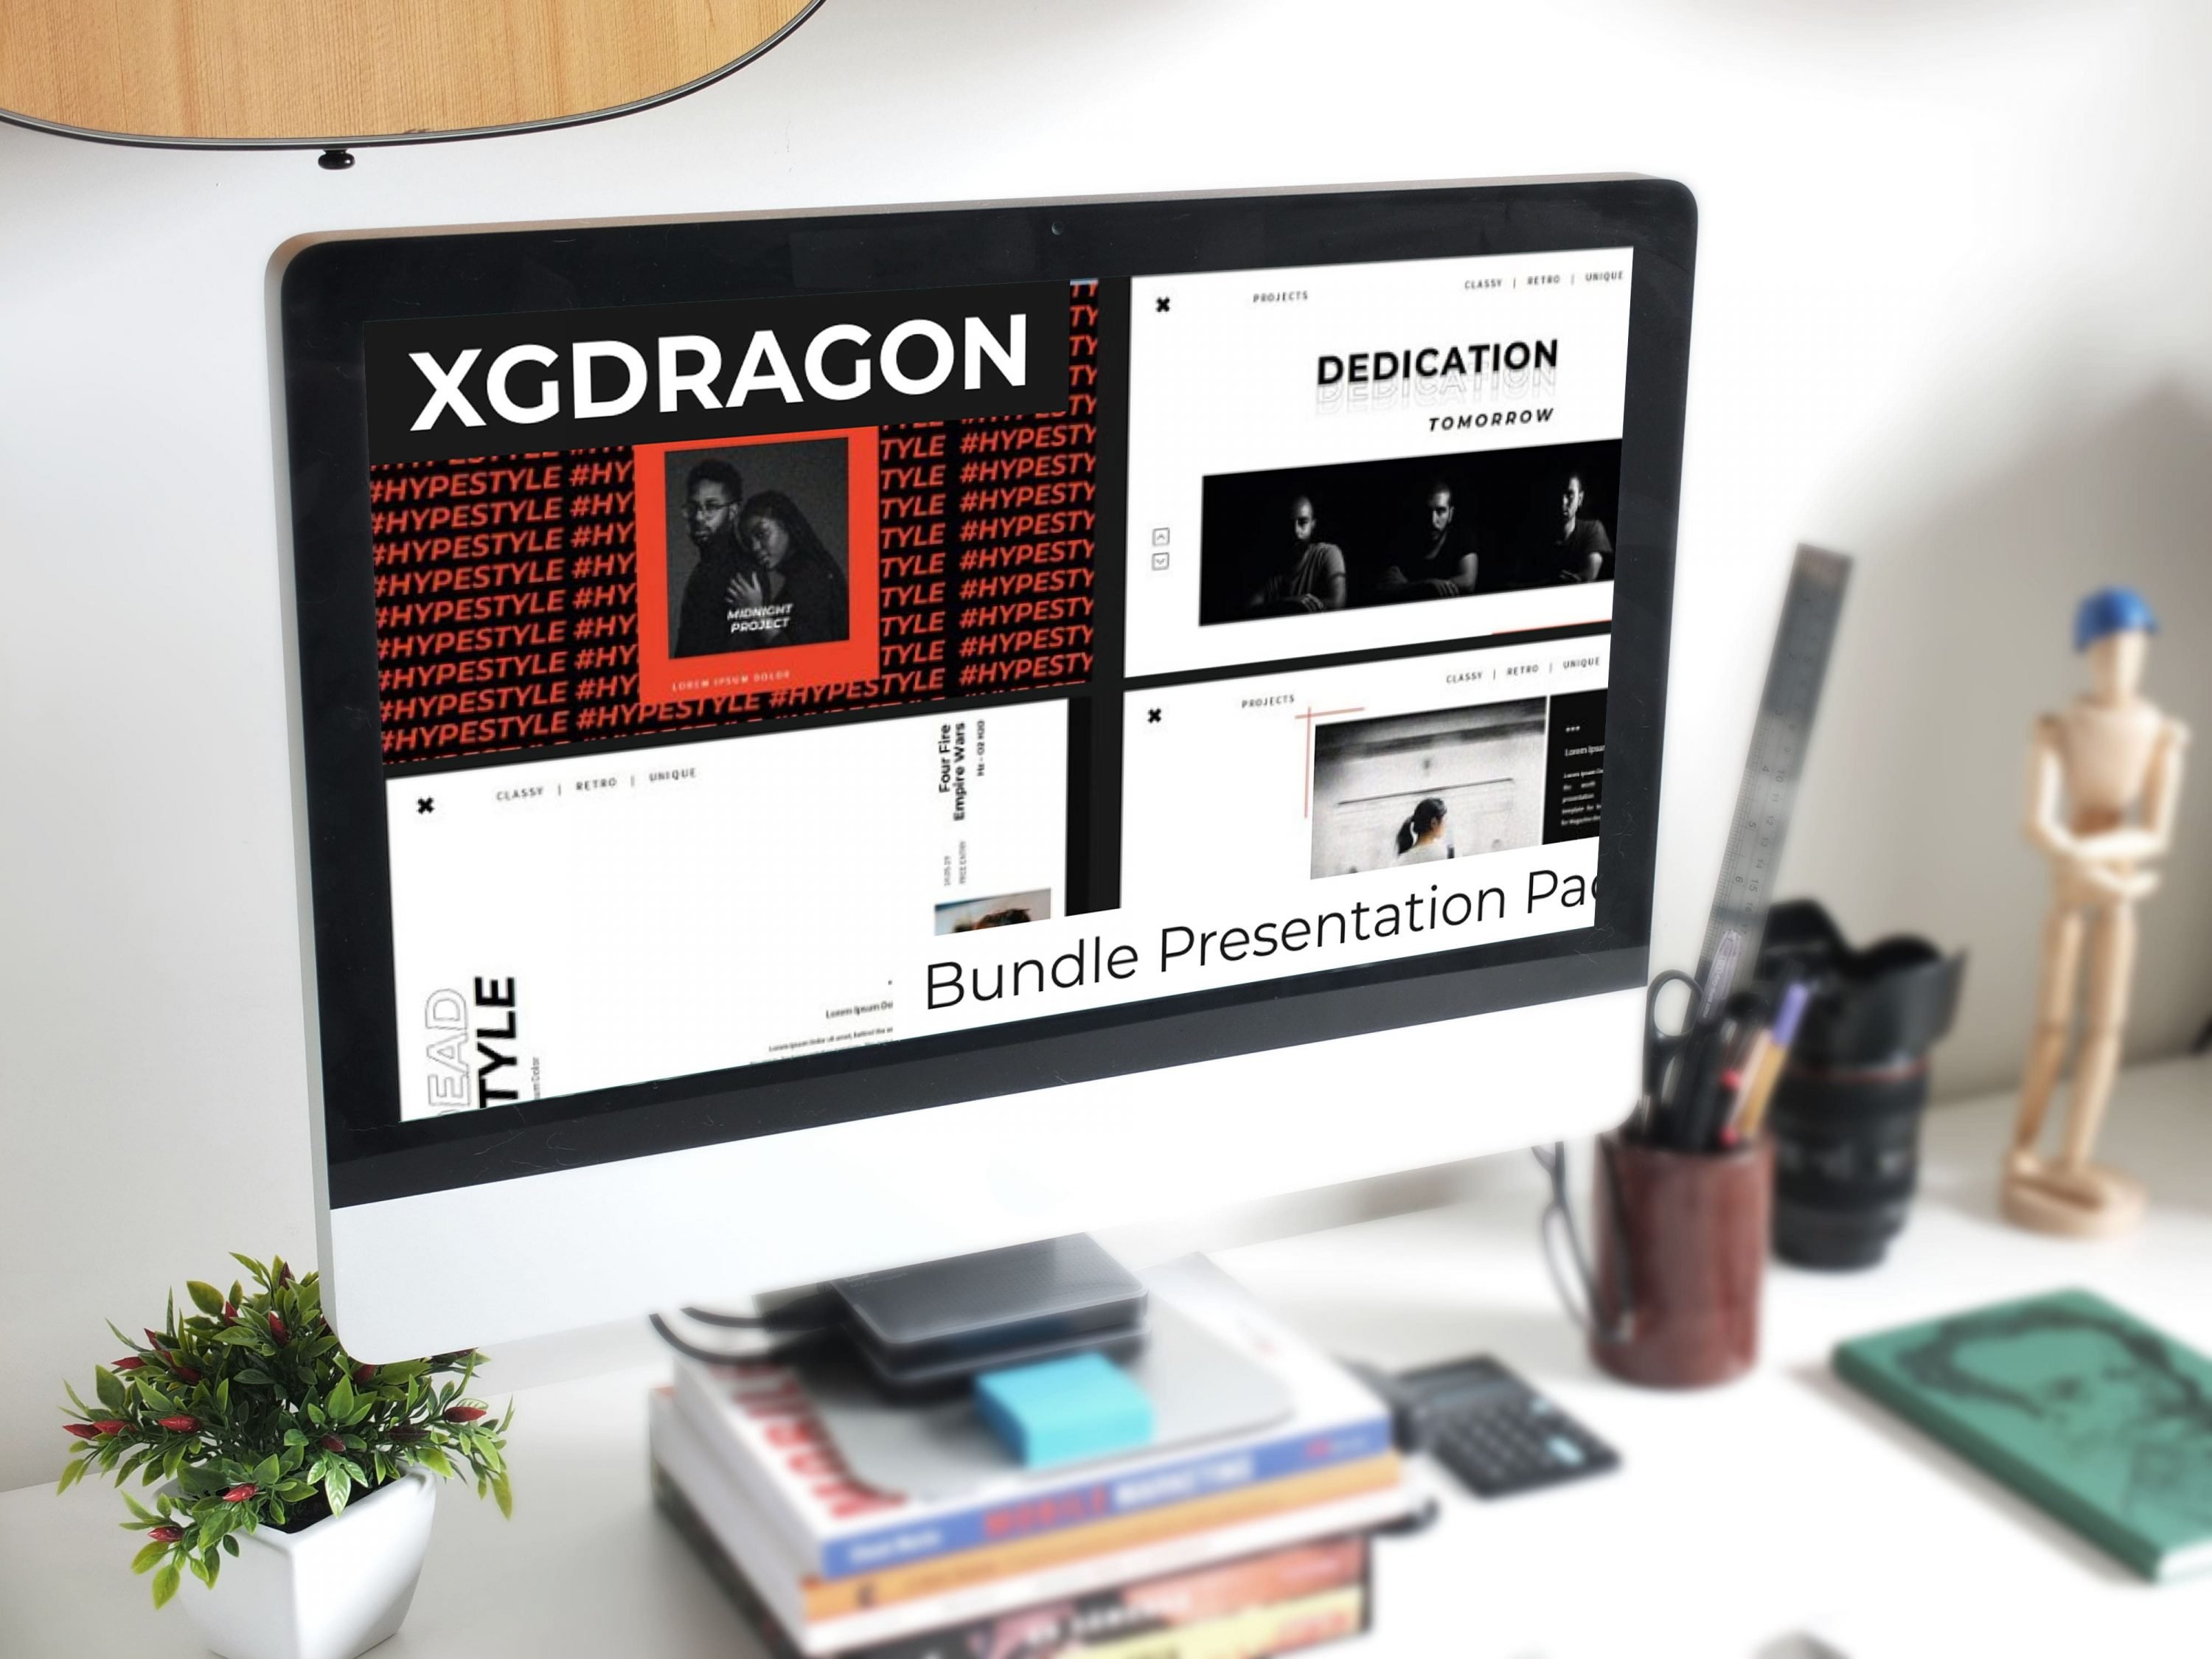 Desktop option of the XGDRAGON Bundle Presentation Pack.